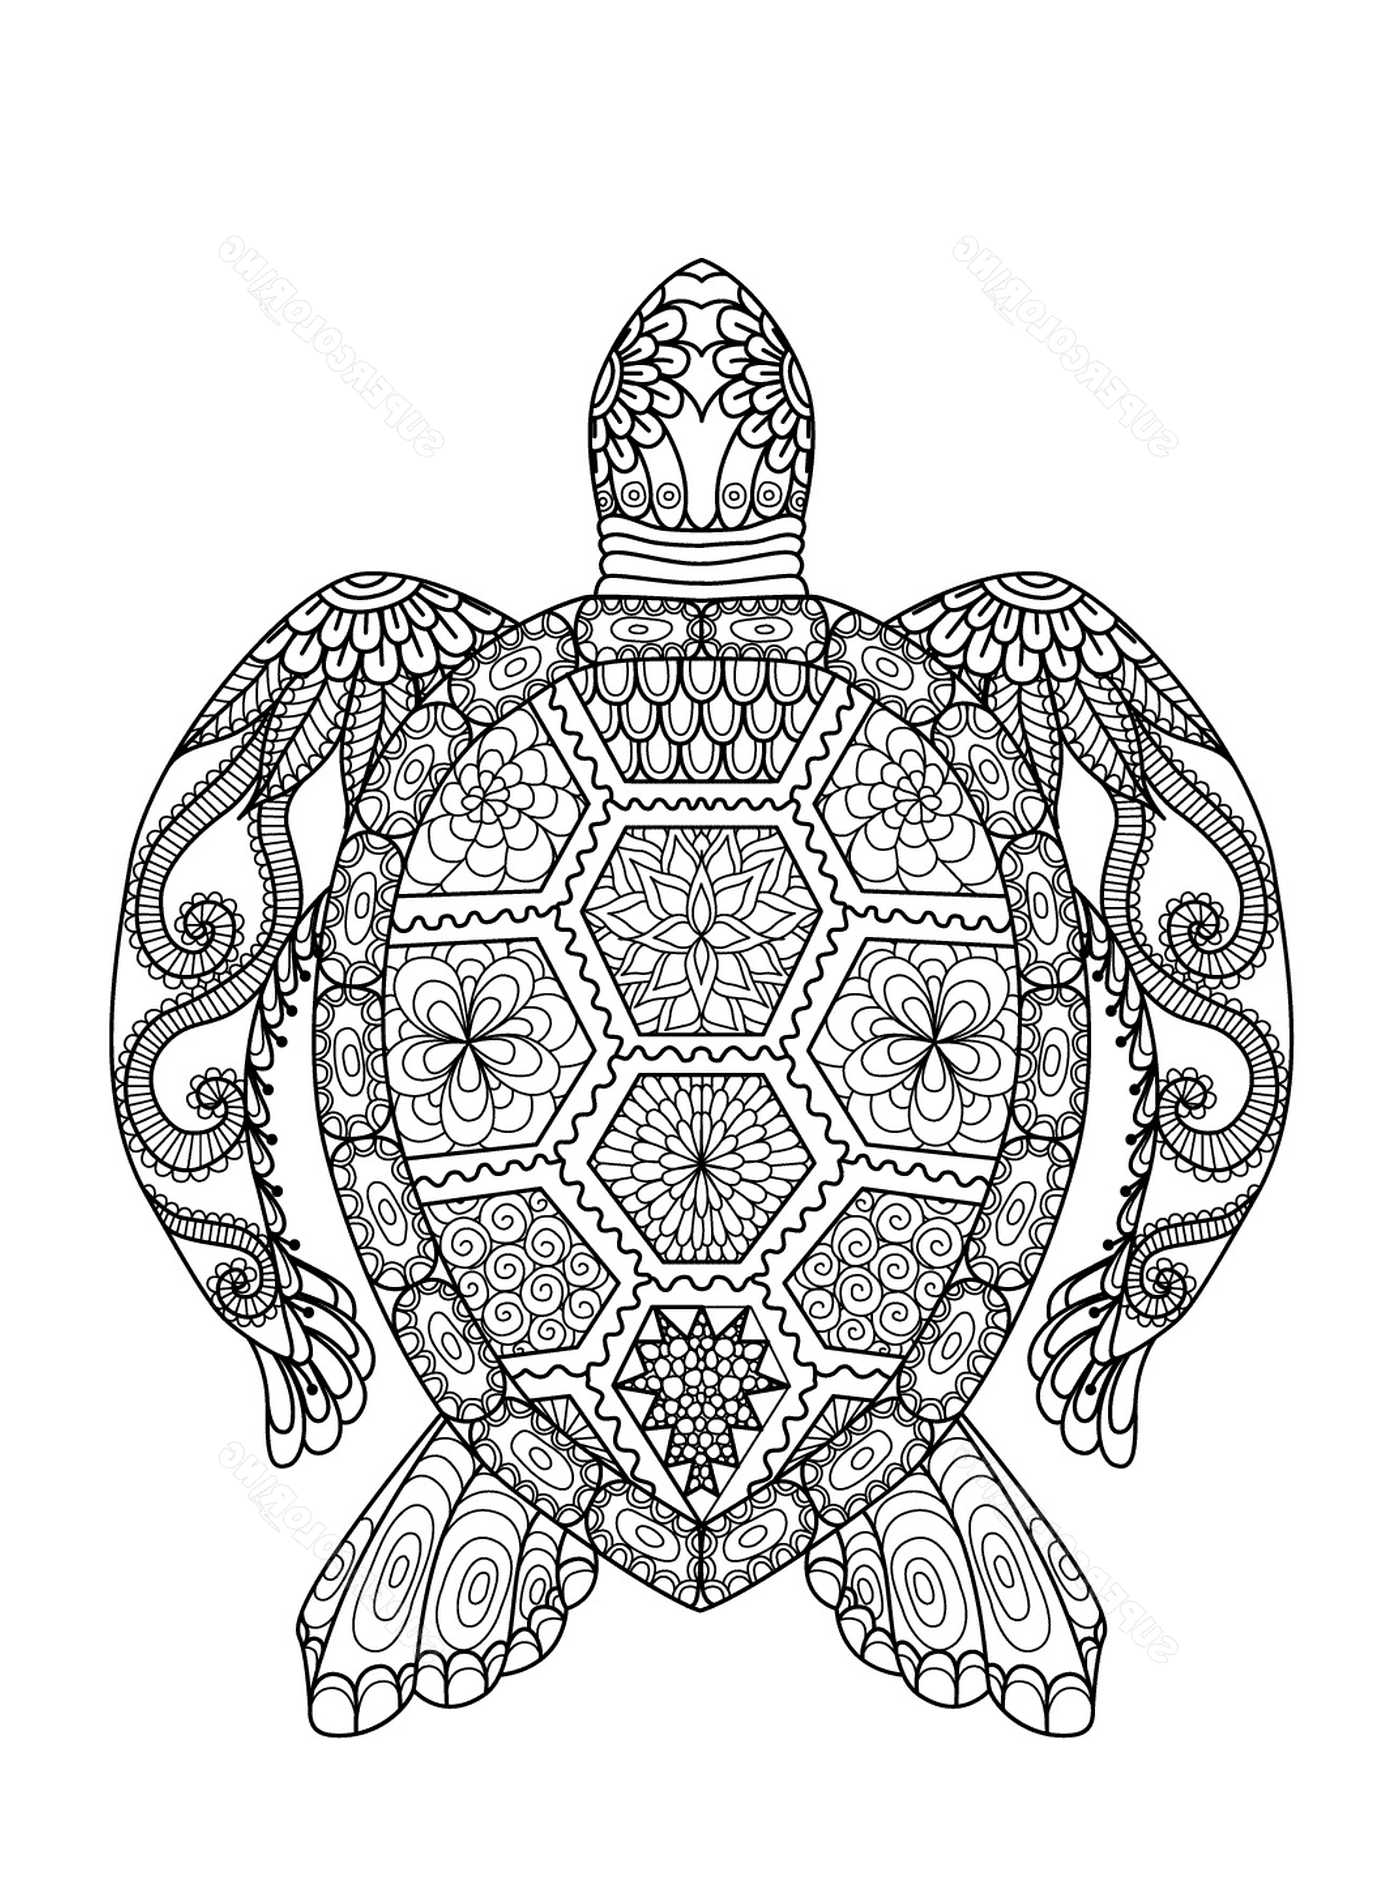  Tortuga marina con elaborados patrones 